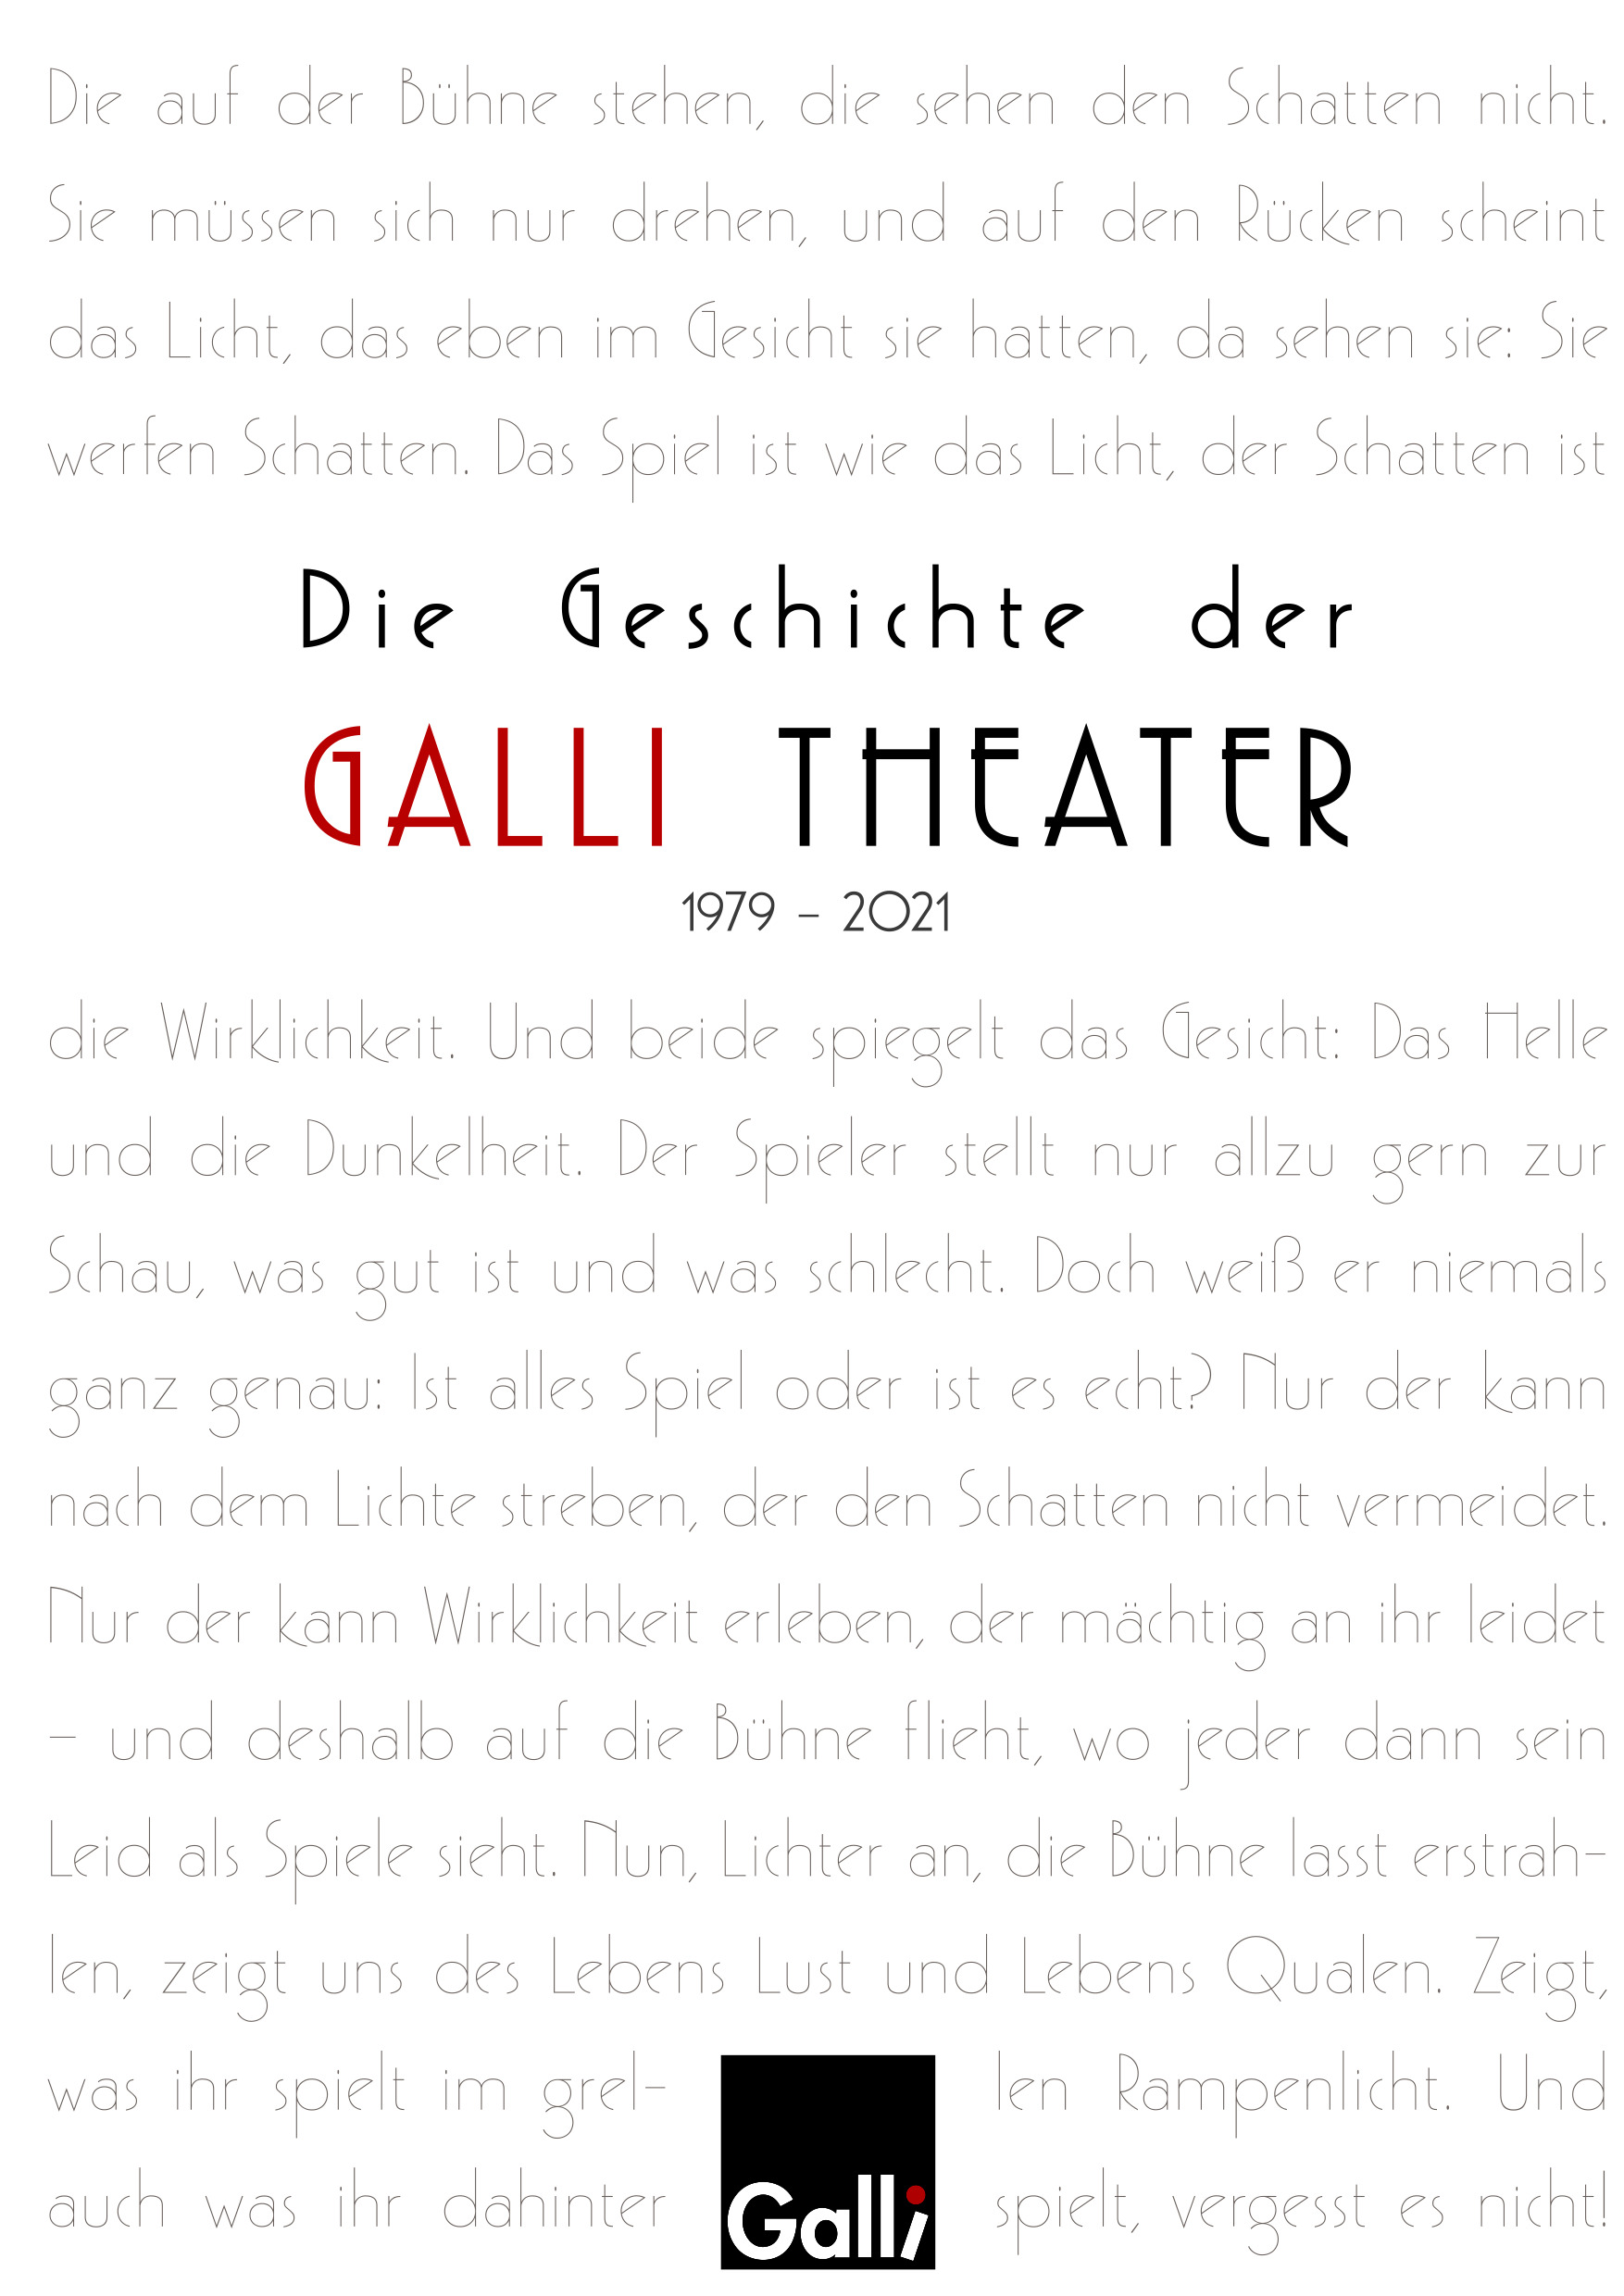 Die Geschichte der Galli Theater